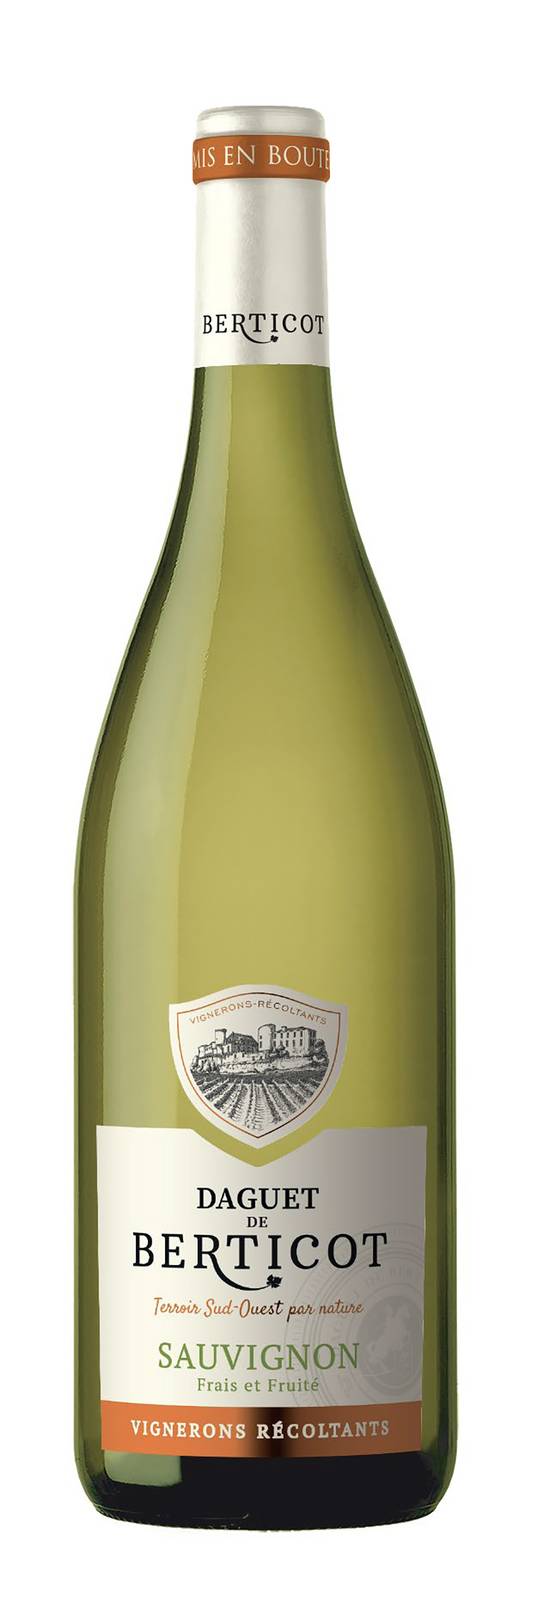 Daguet de Berticot - Vin atlantique IGP sauvignon blanc (750ml)